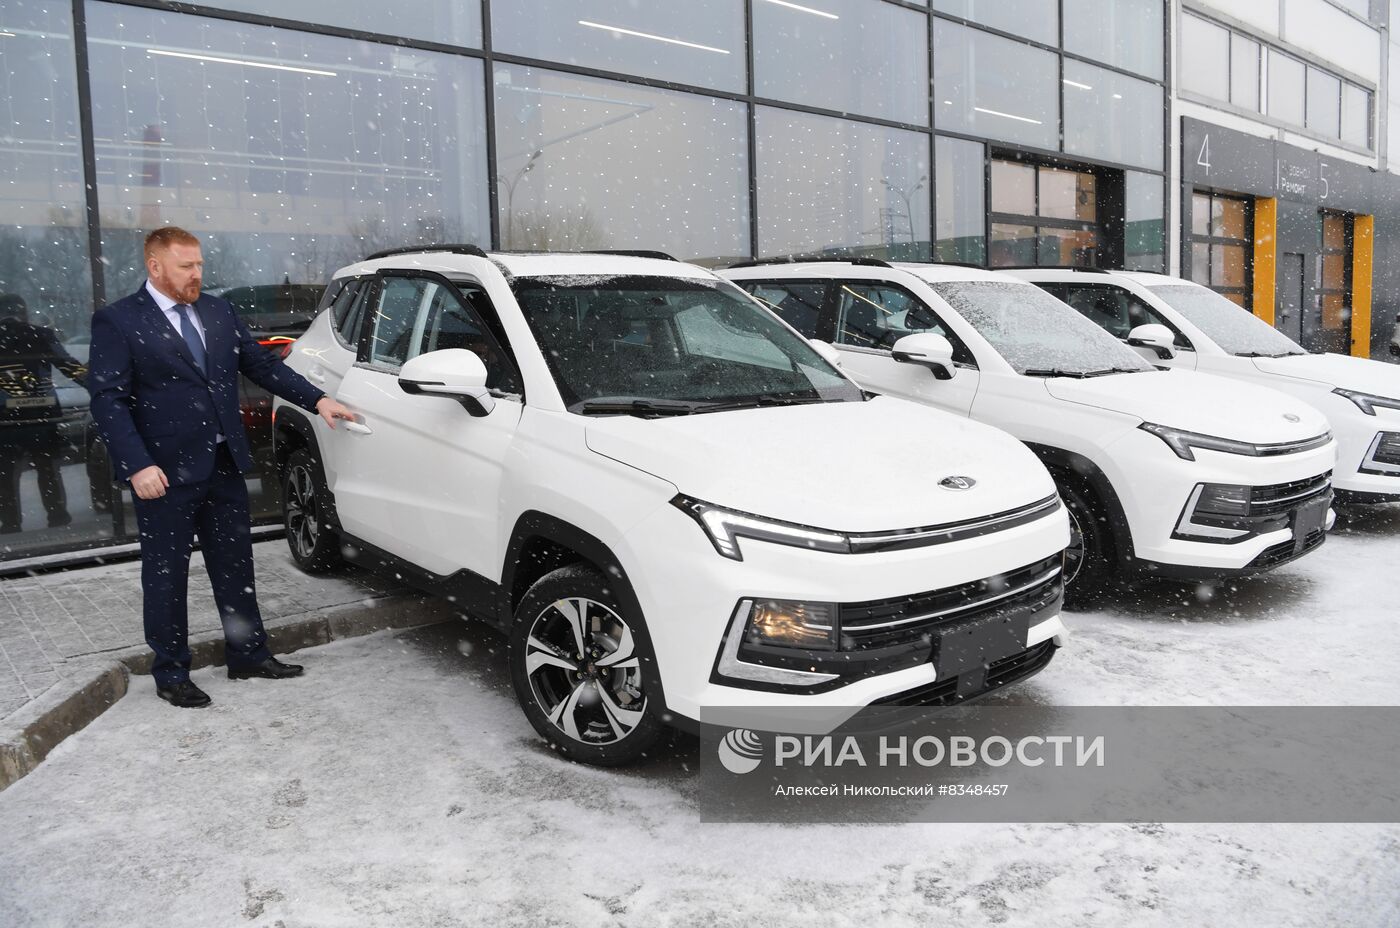 Первые автомобили "Москвич" поступили в розничную продажу